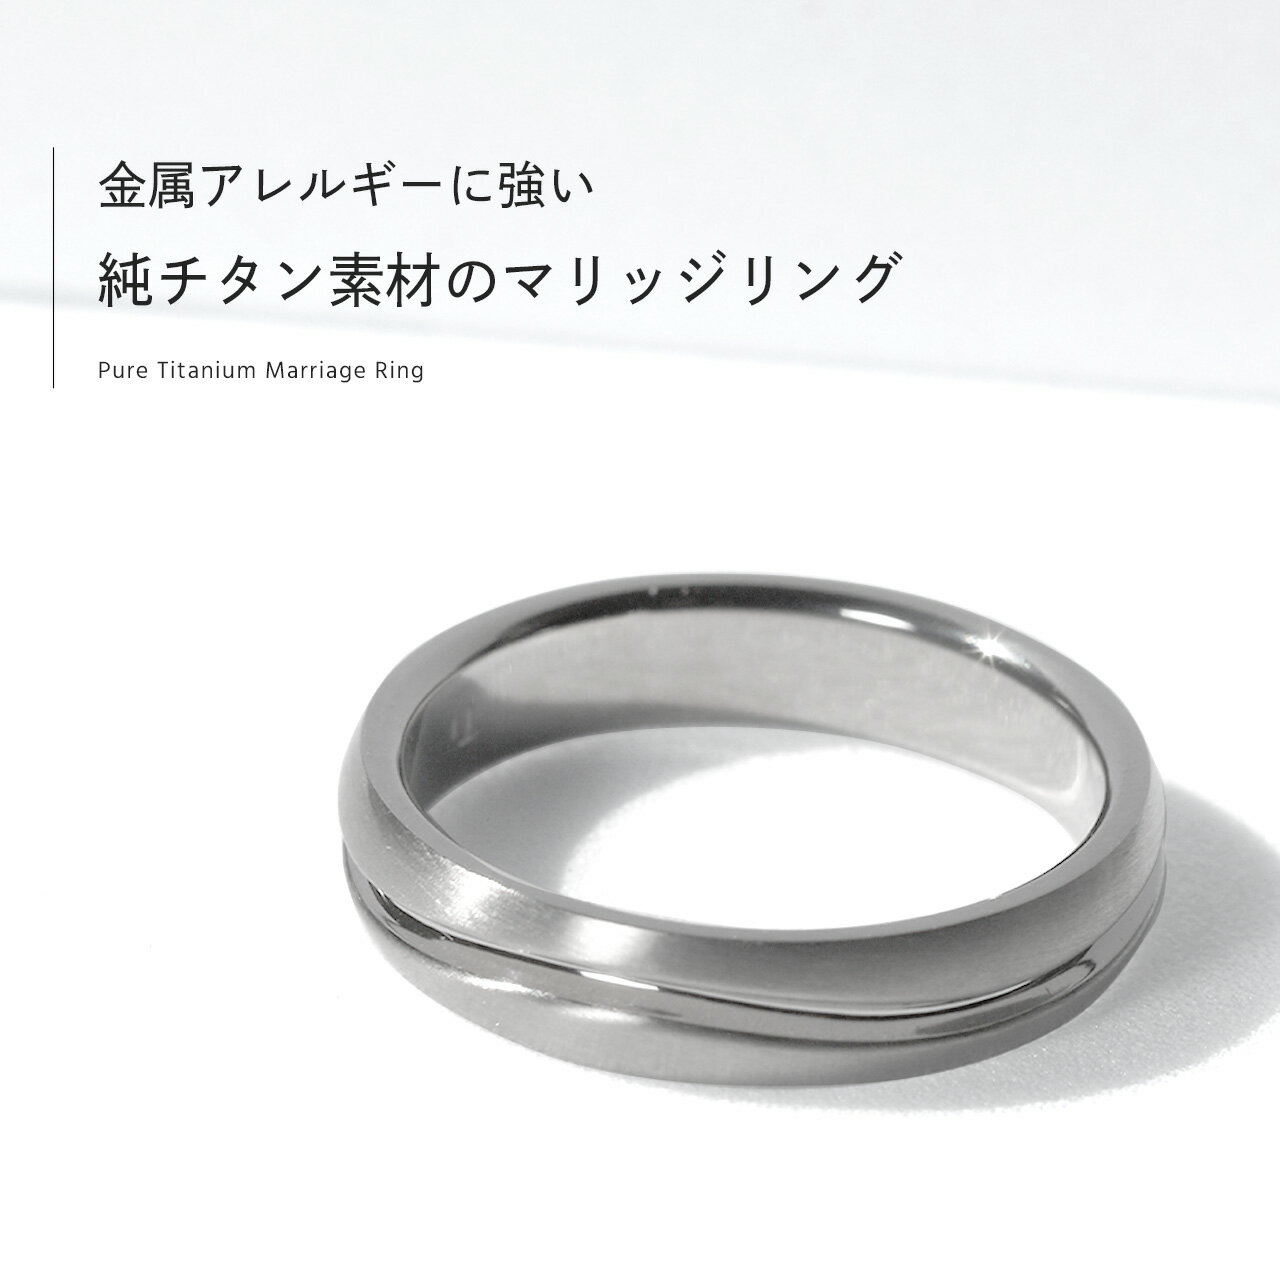 結婚指輪 純チタン マリッジリング 単品 【送...の紹介画像2